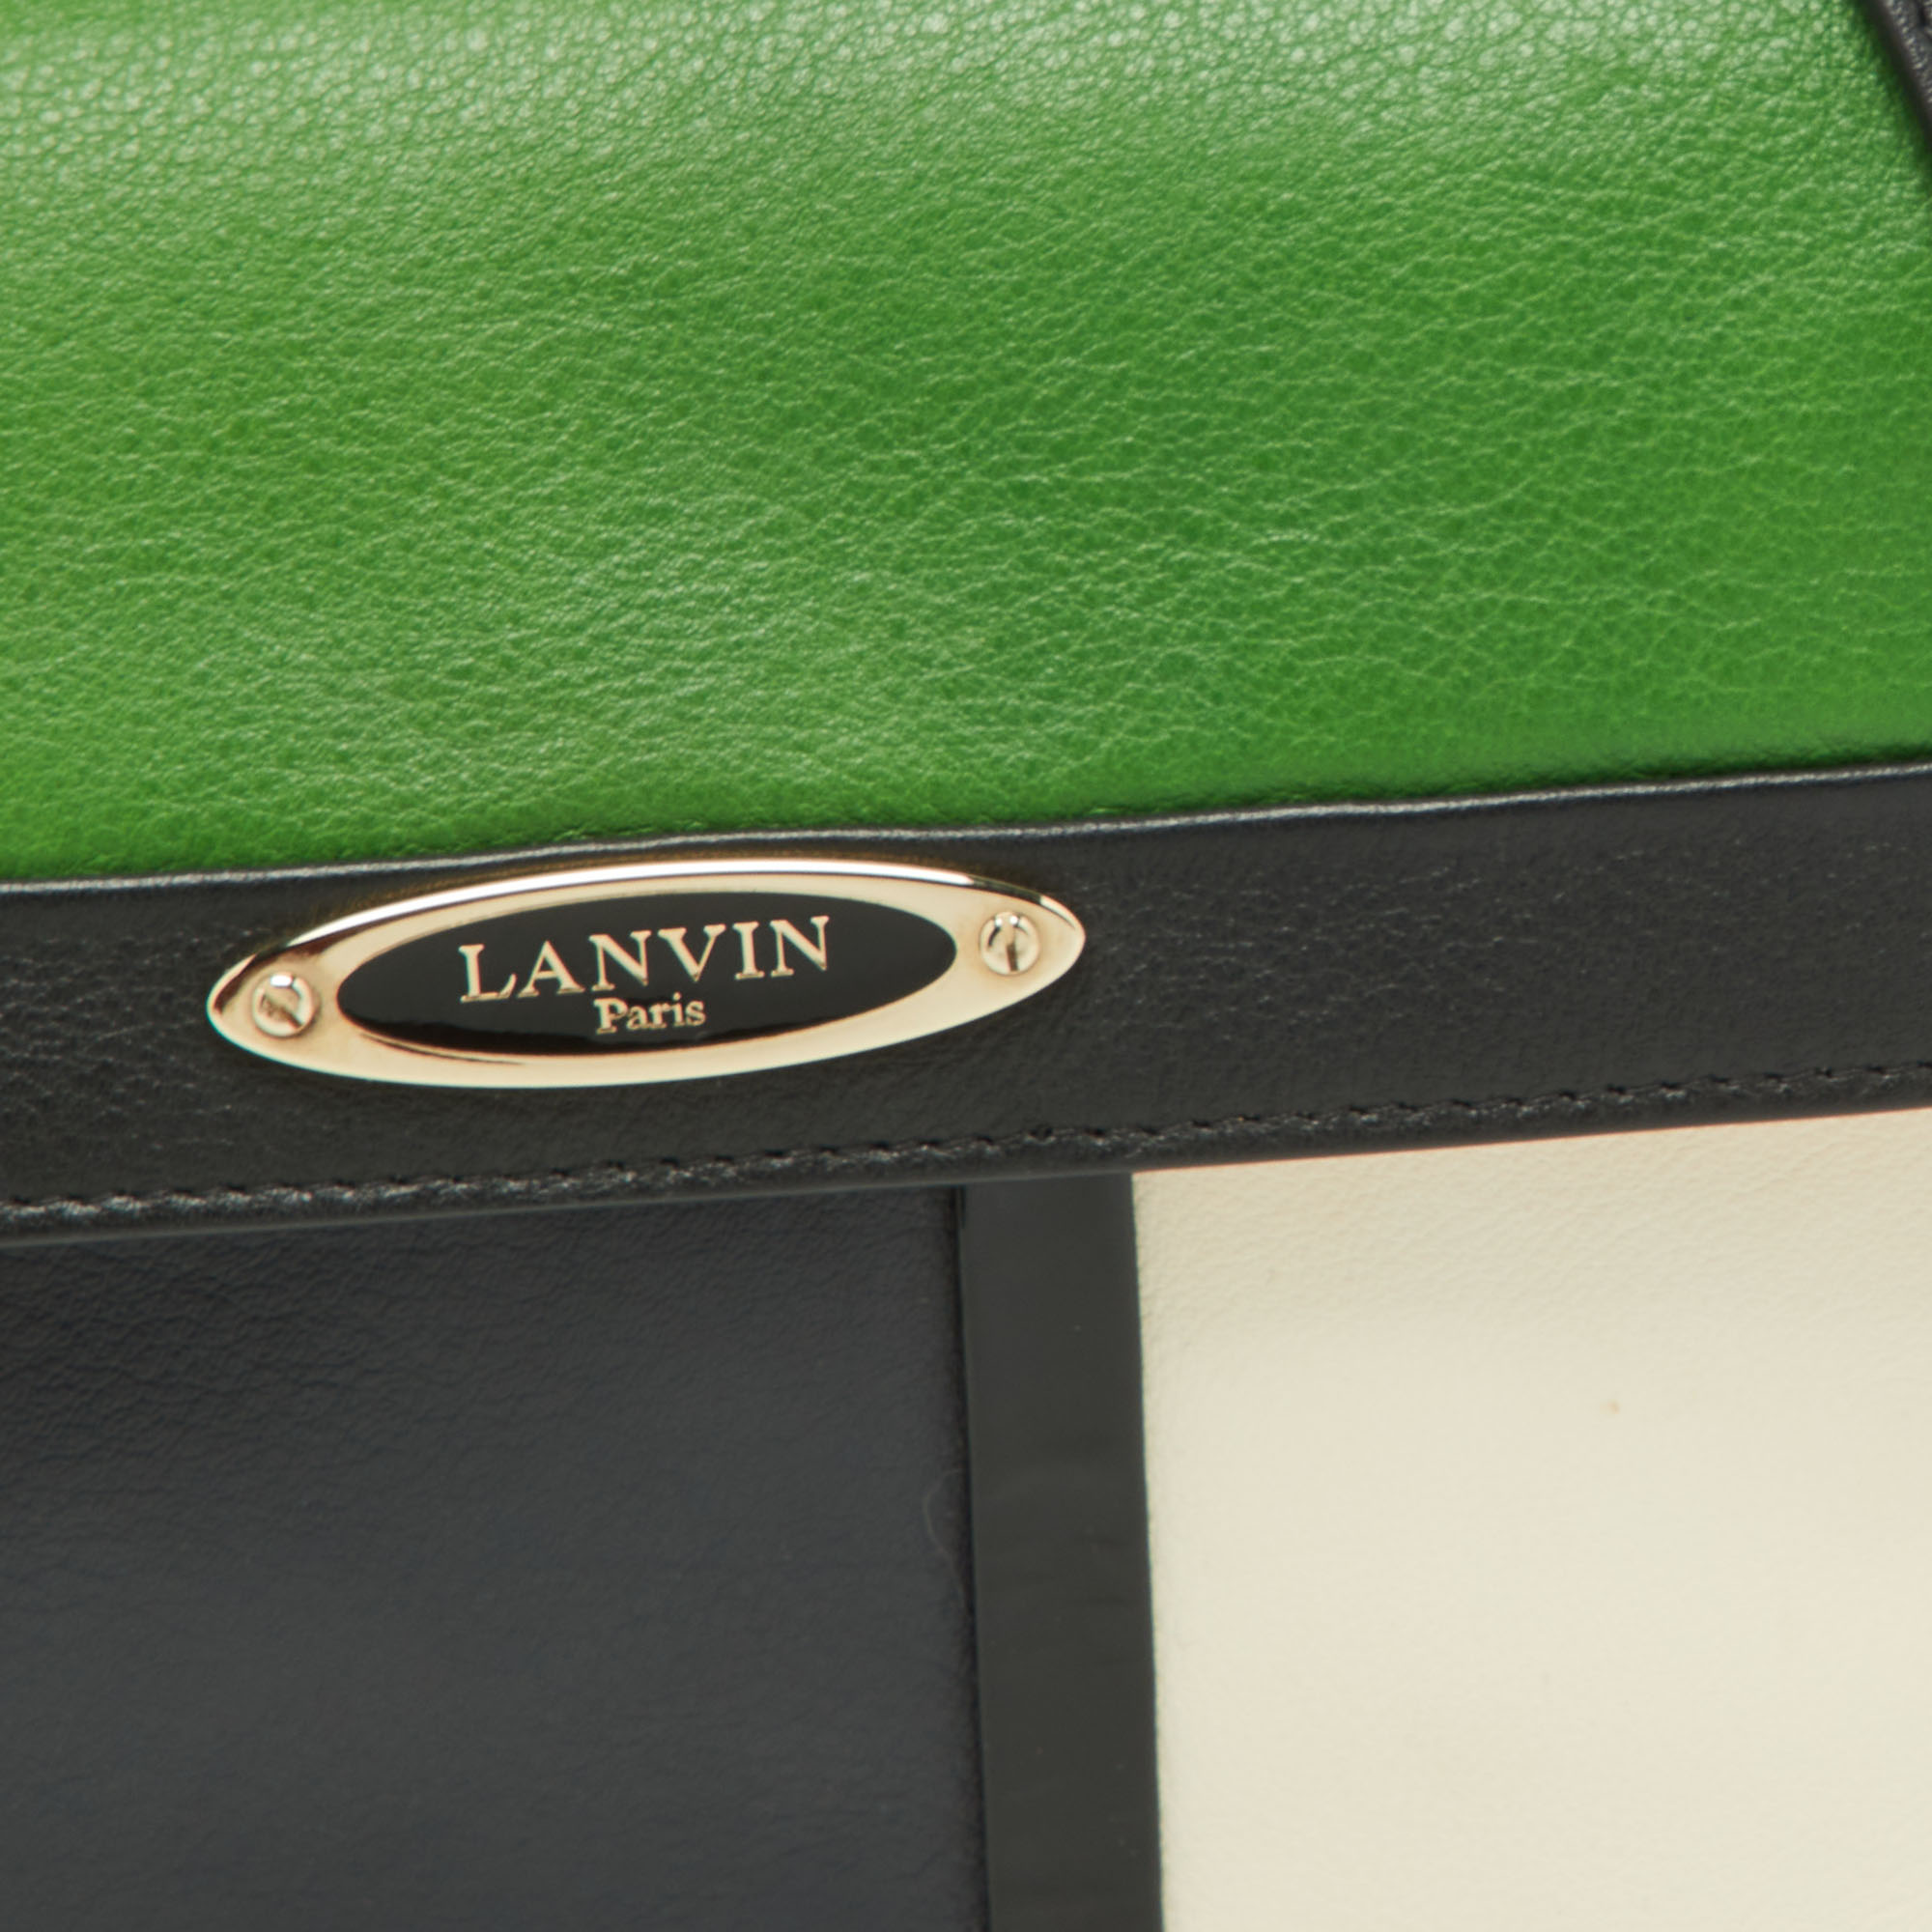 Lanvin Tricolor Leather Sac De Ville Crossbody Bag